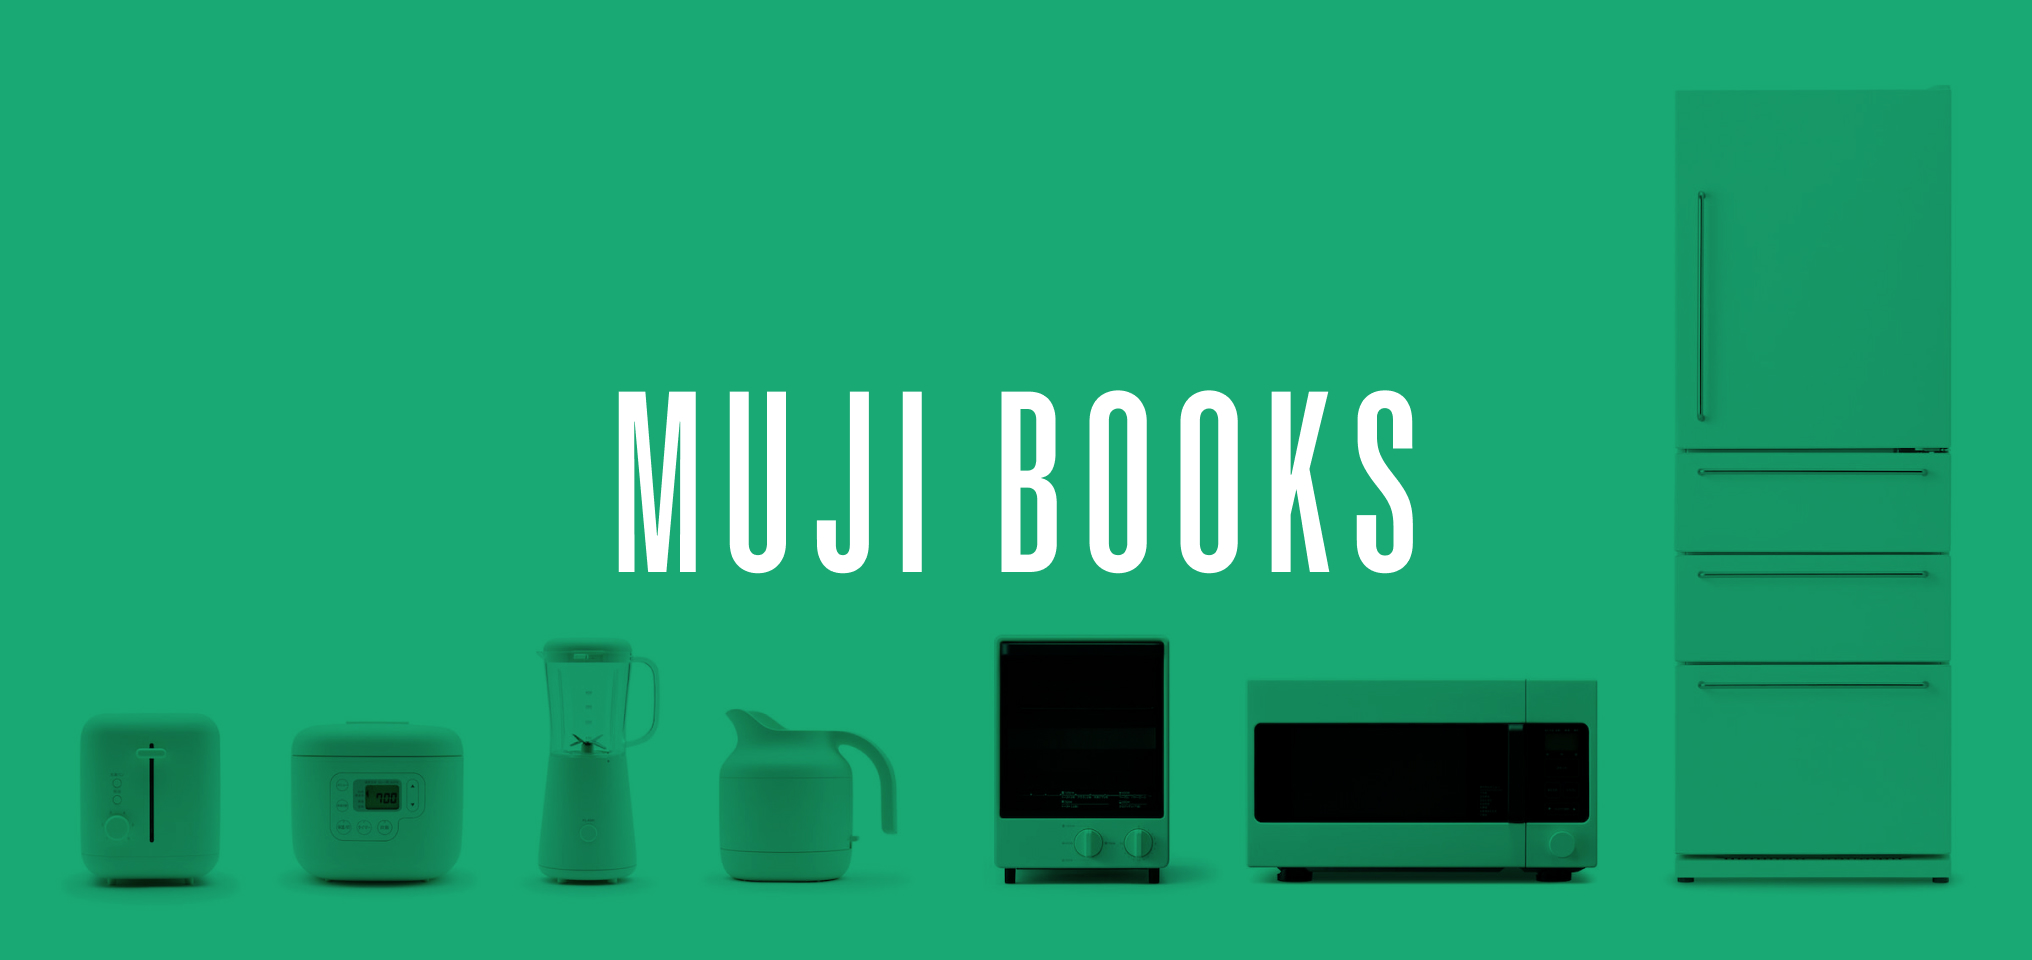 Three books about Muji